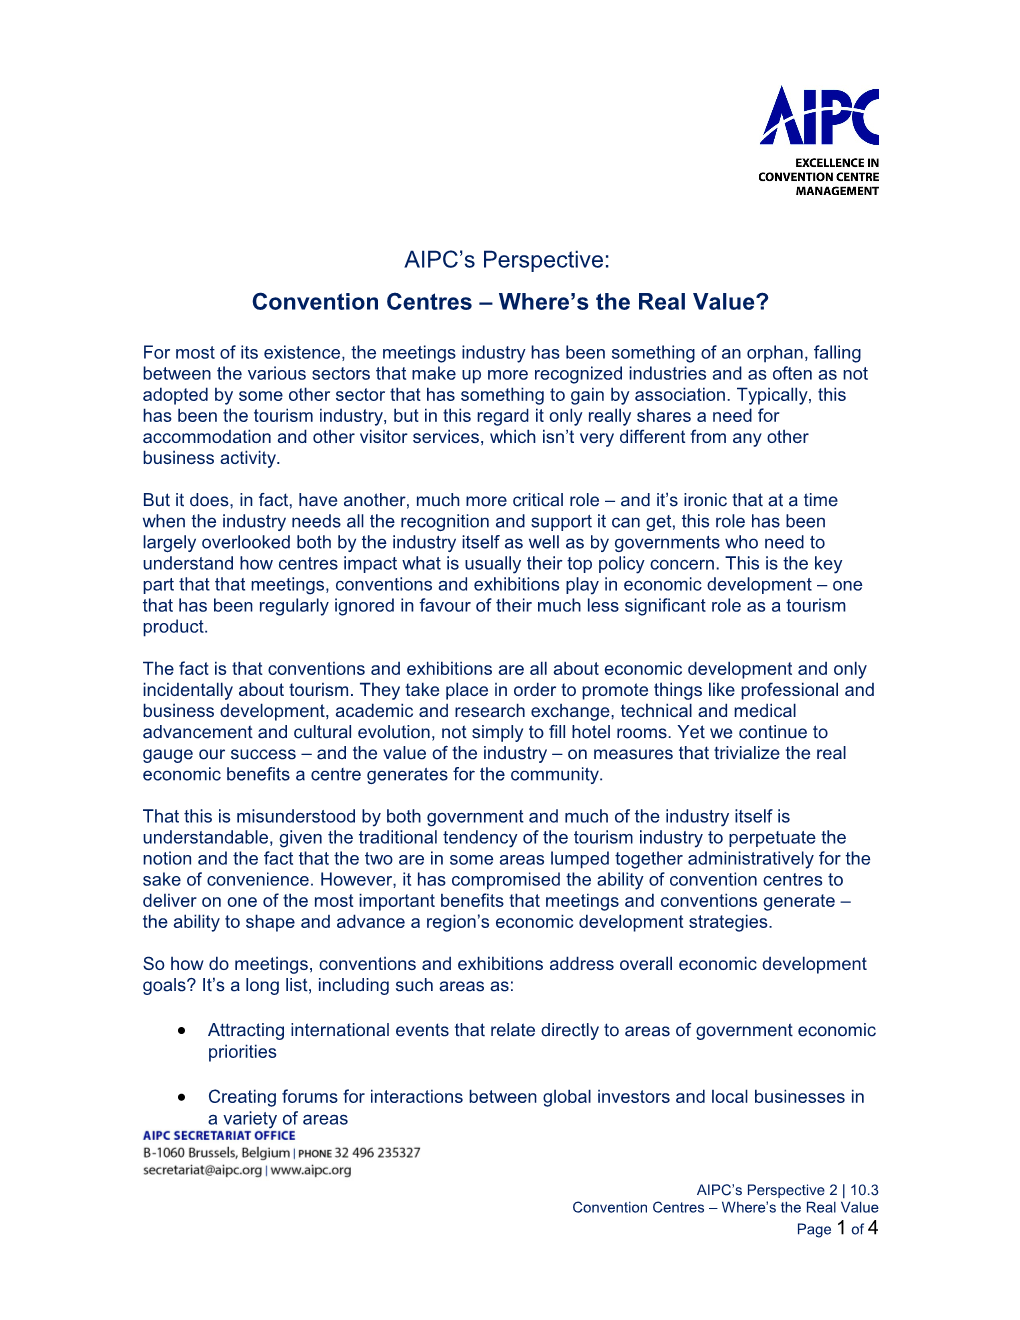 AIPC Column by AIPC President, Edgar Hirt